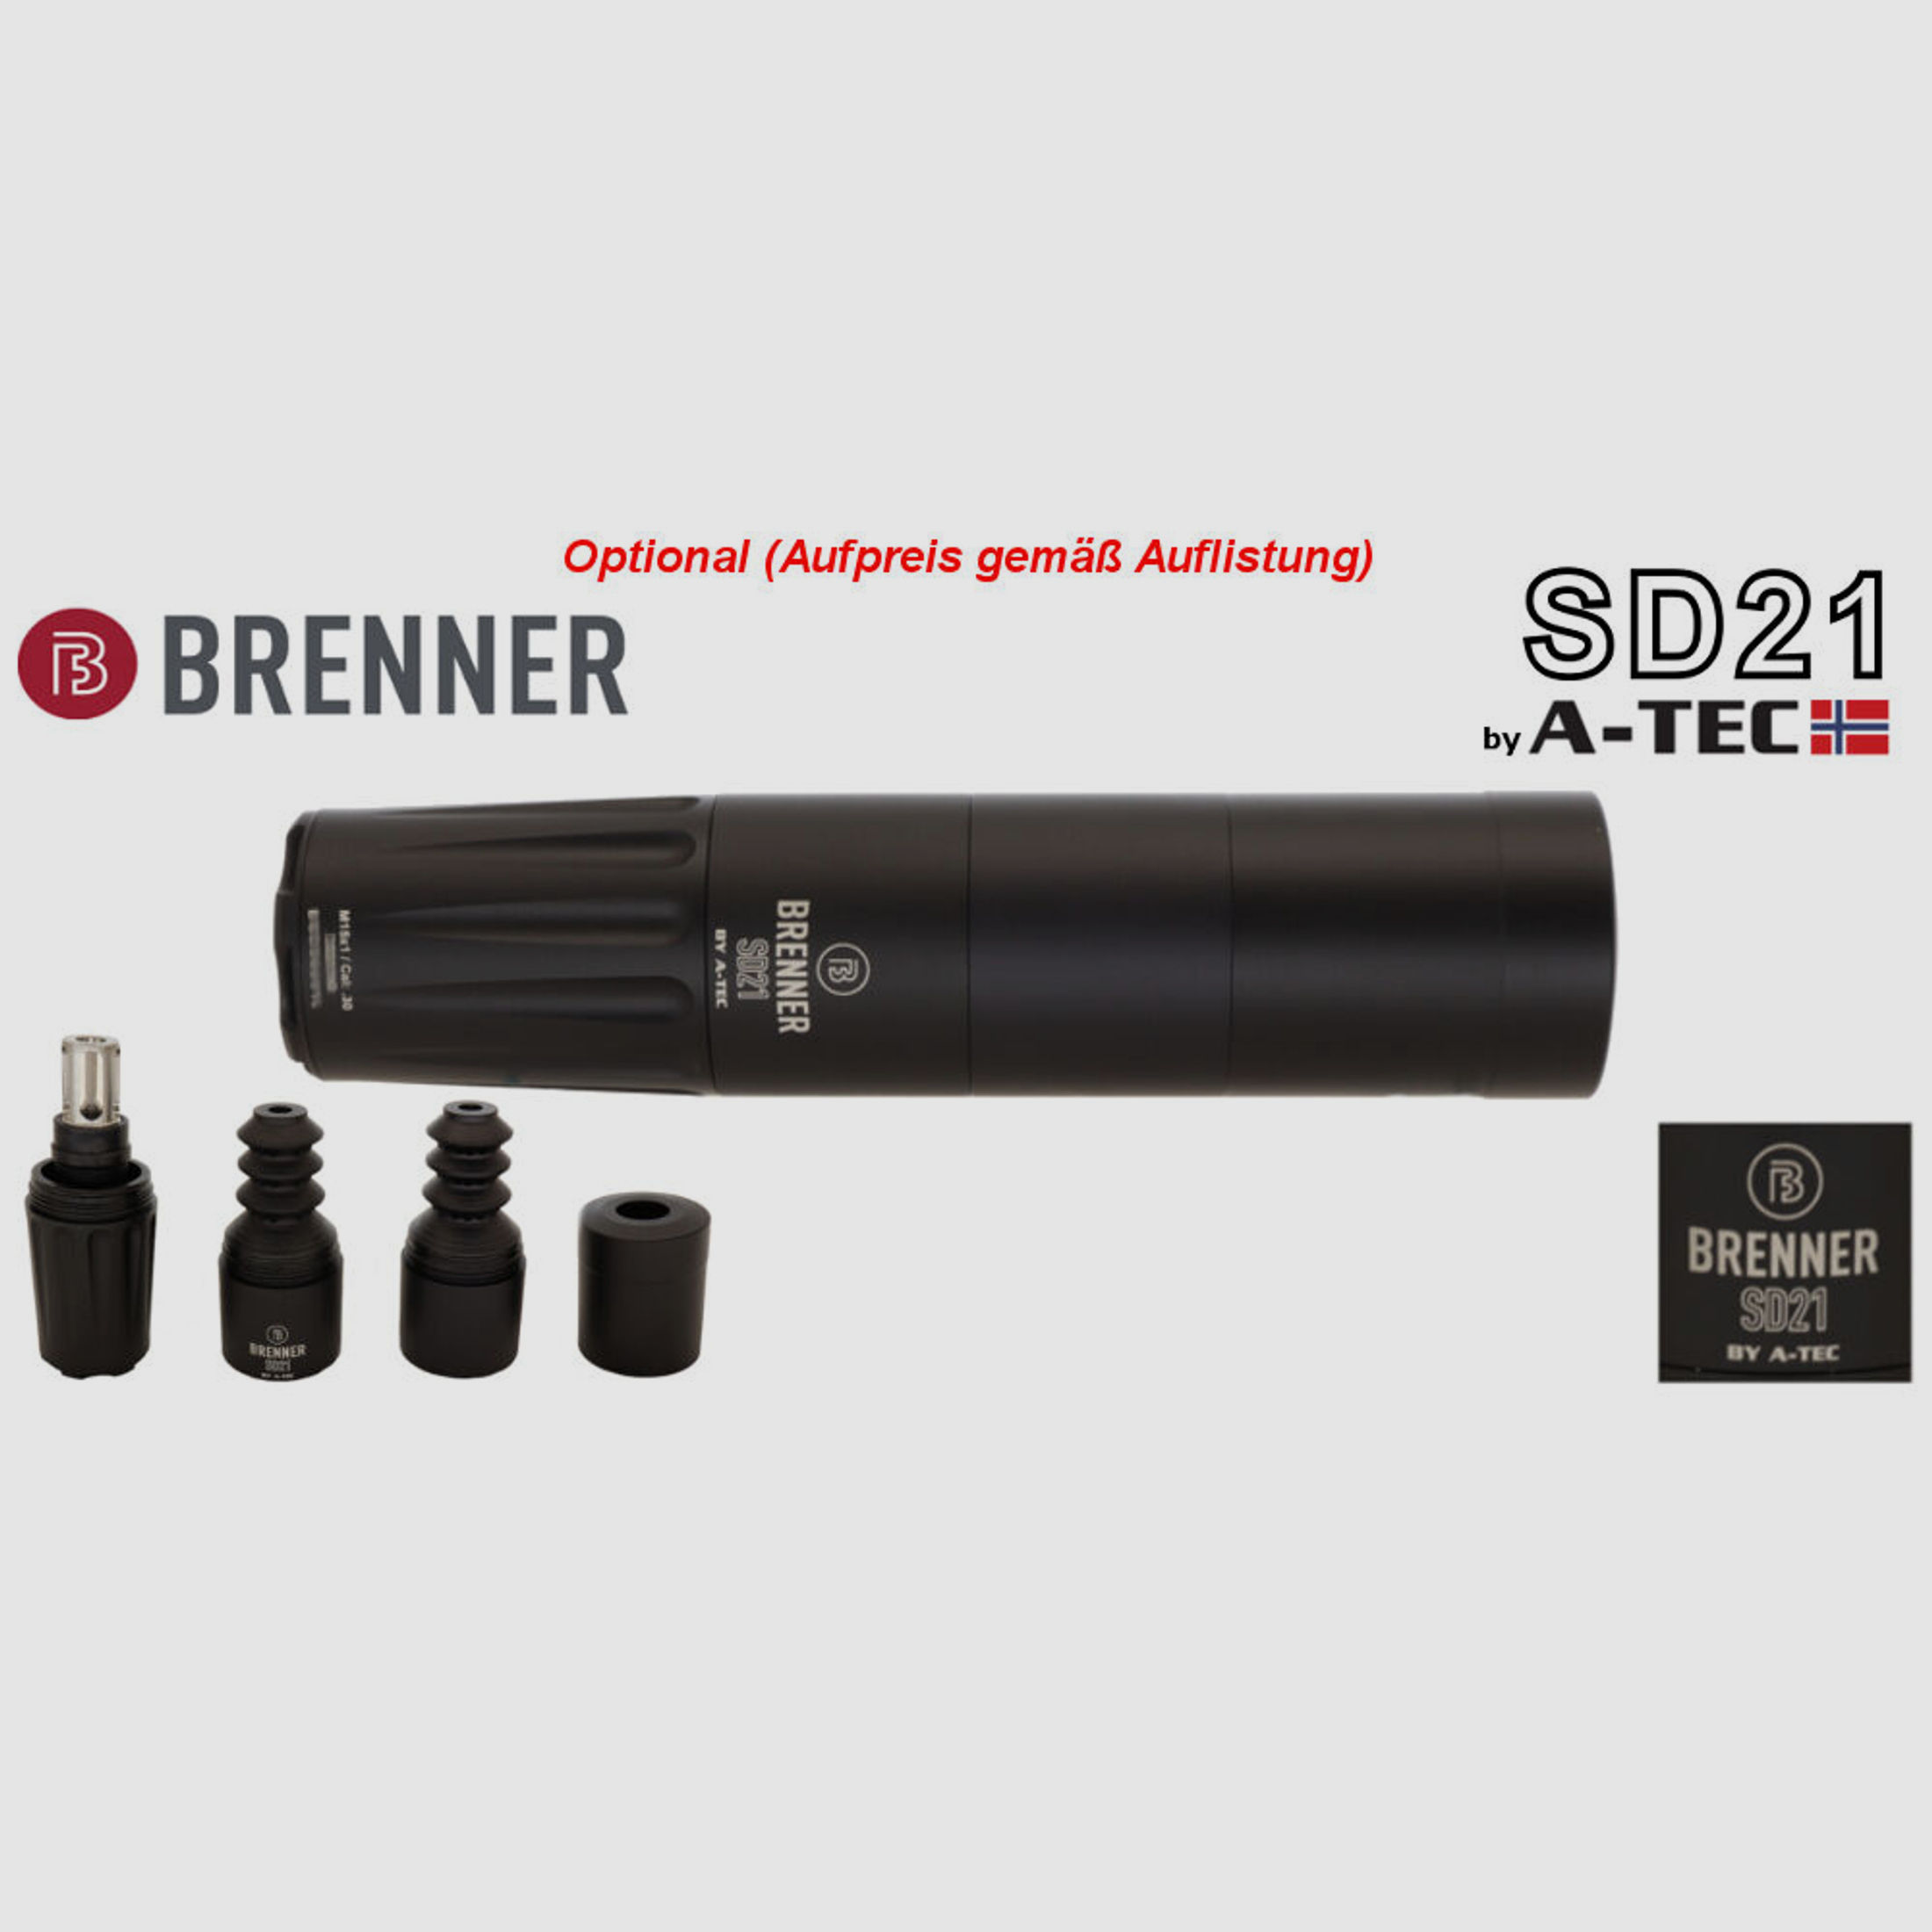 Brenner Komplettpaket:	 BR20 L.E. (Nussbaum, verstellbarer Schaftrücken / Limited Edition) mit Bushnell 2.5-15x50 (Parallaxe verst.)